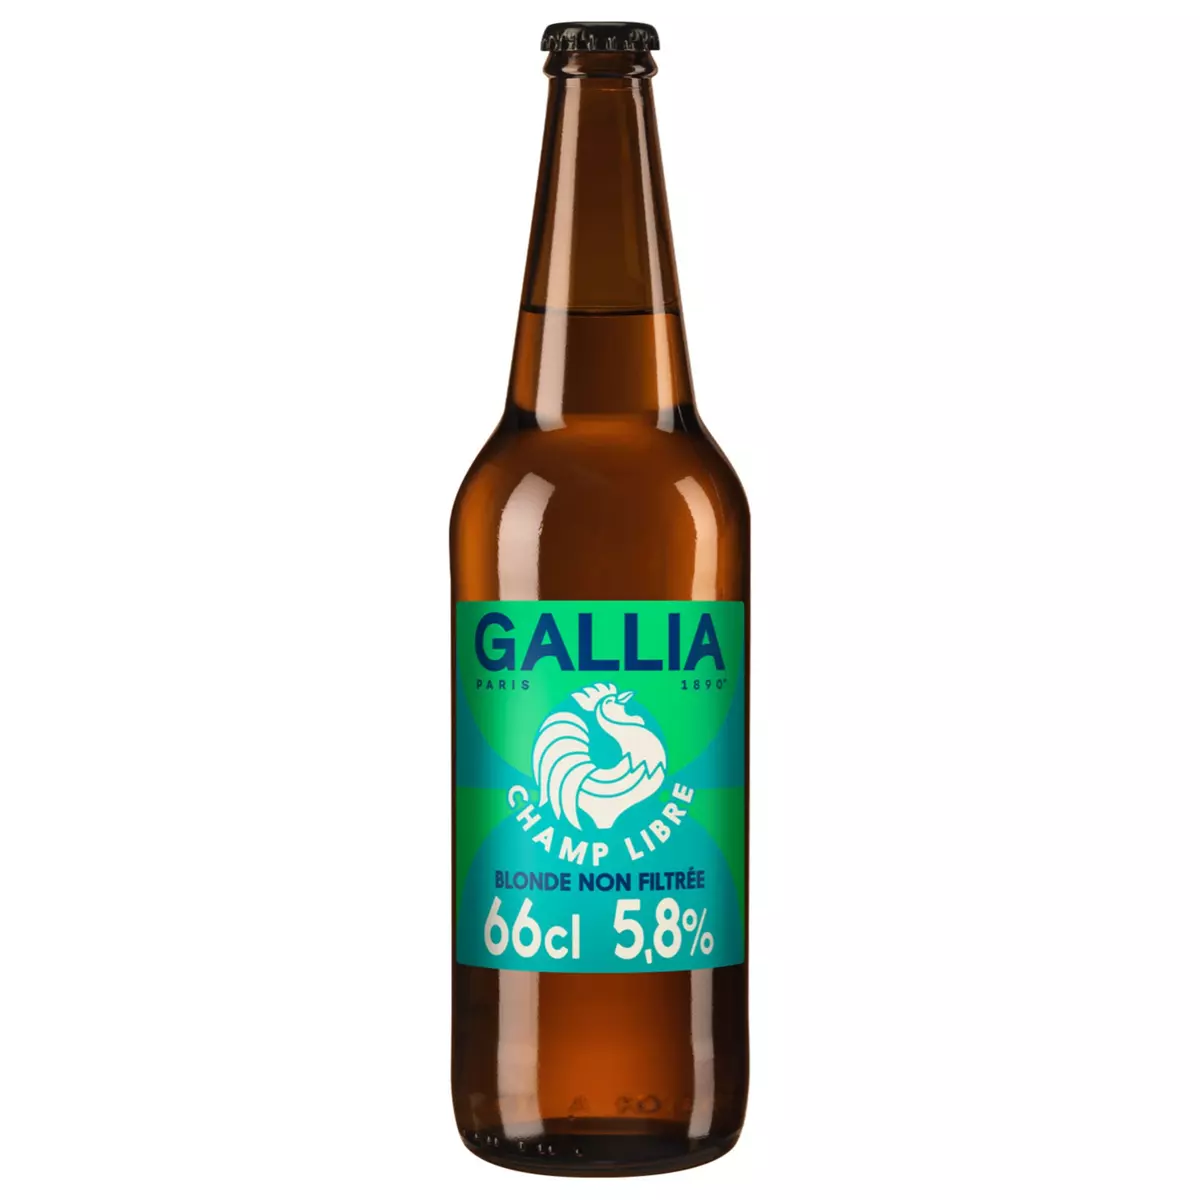 GALLIA Bière blonde non filtrée 5.8% bouteille 66cl